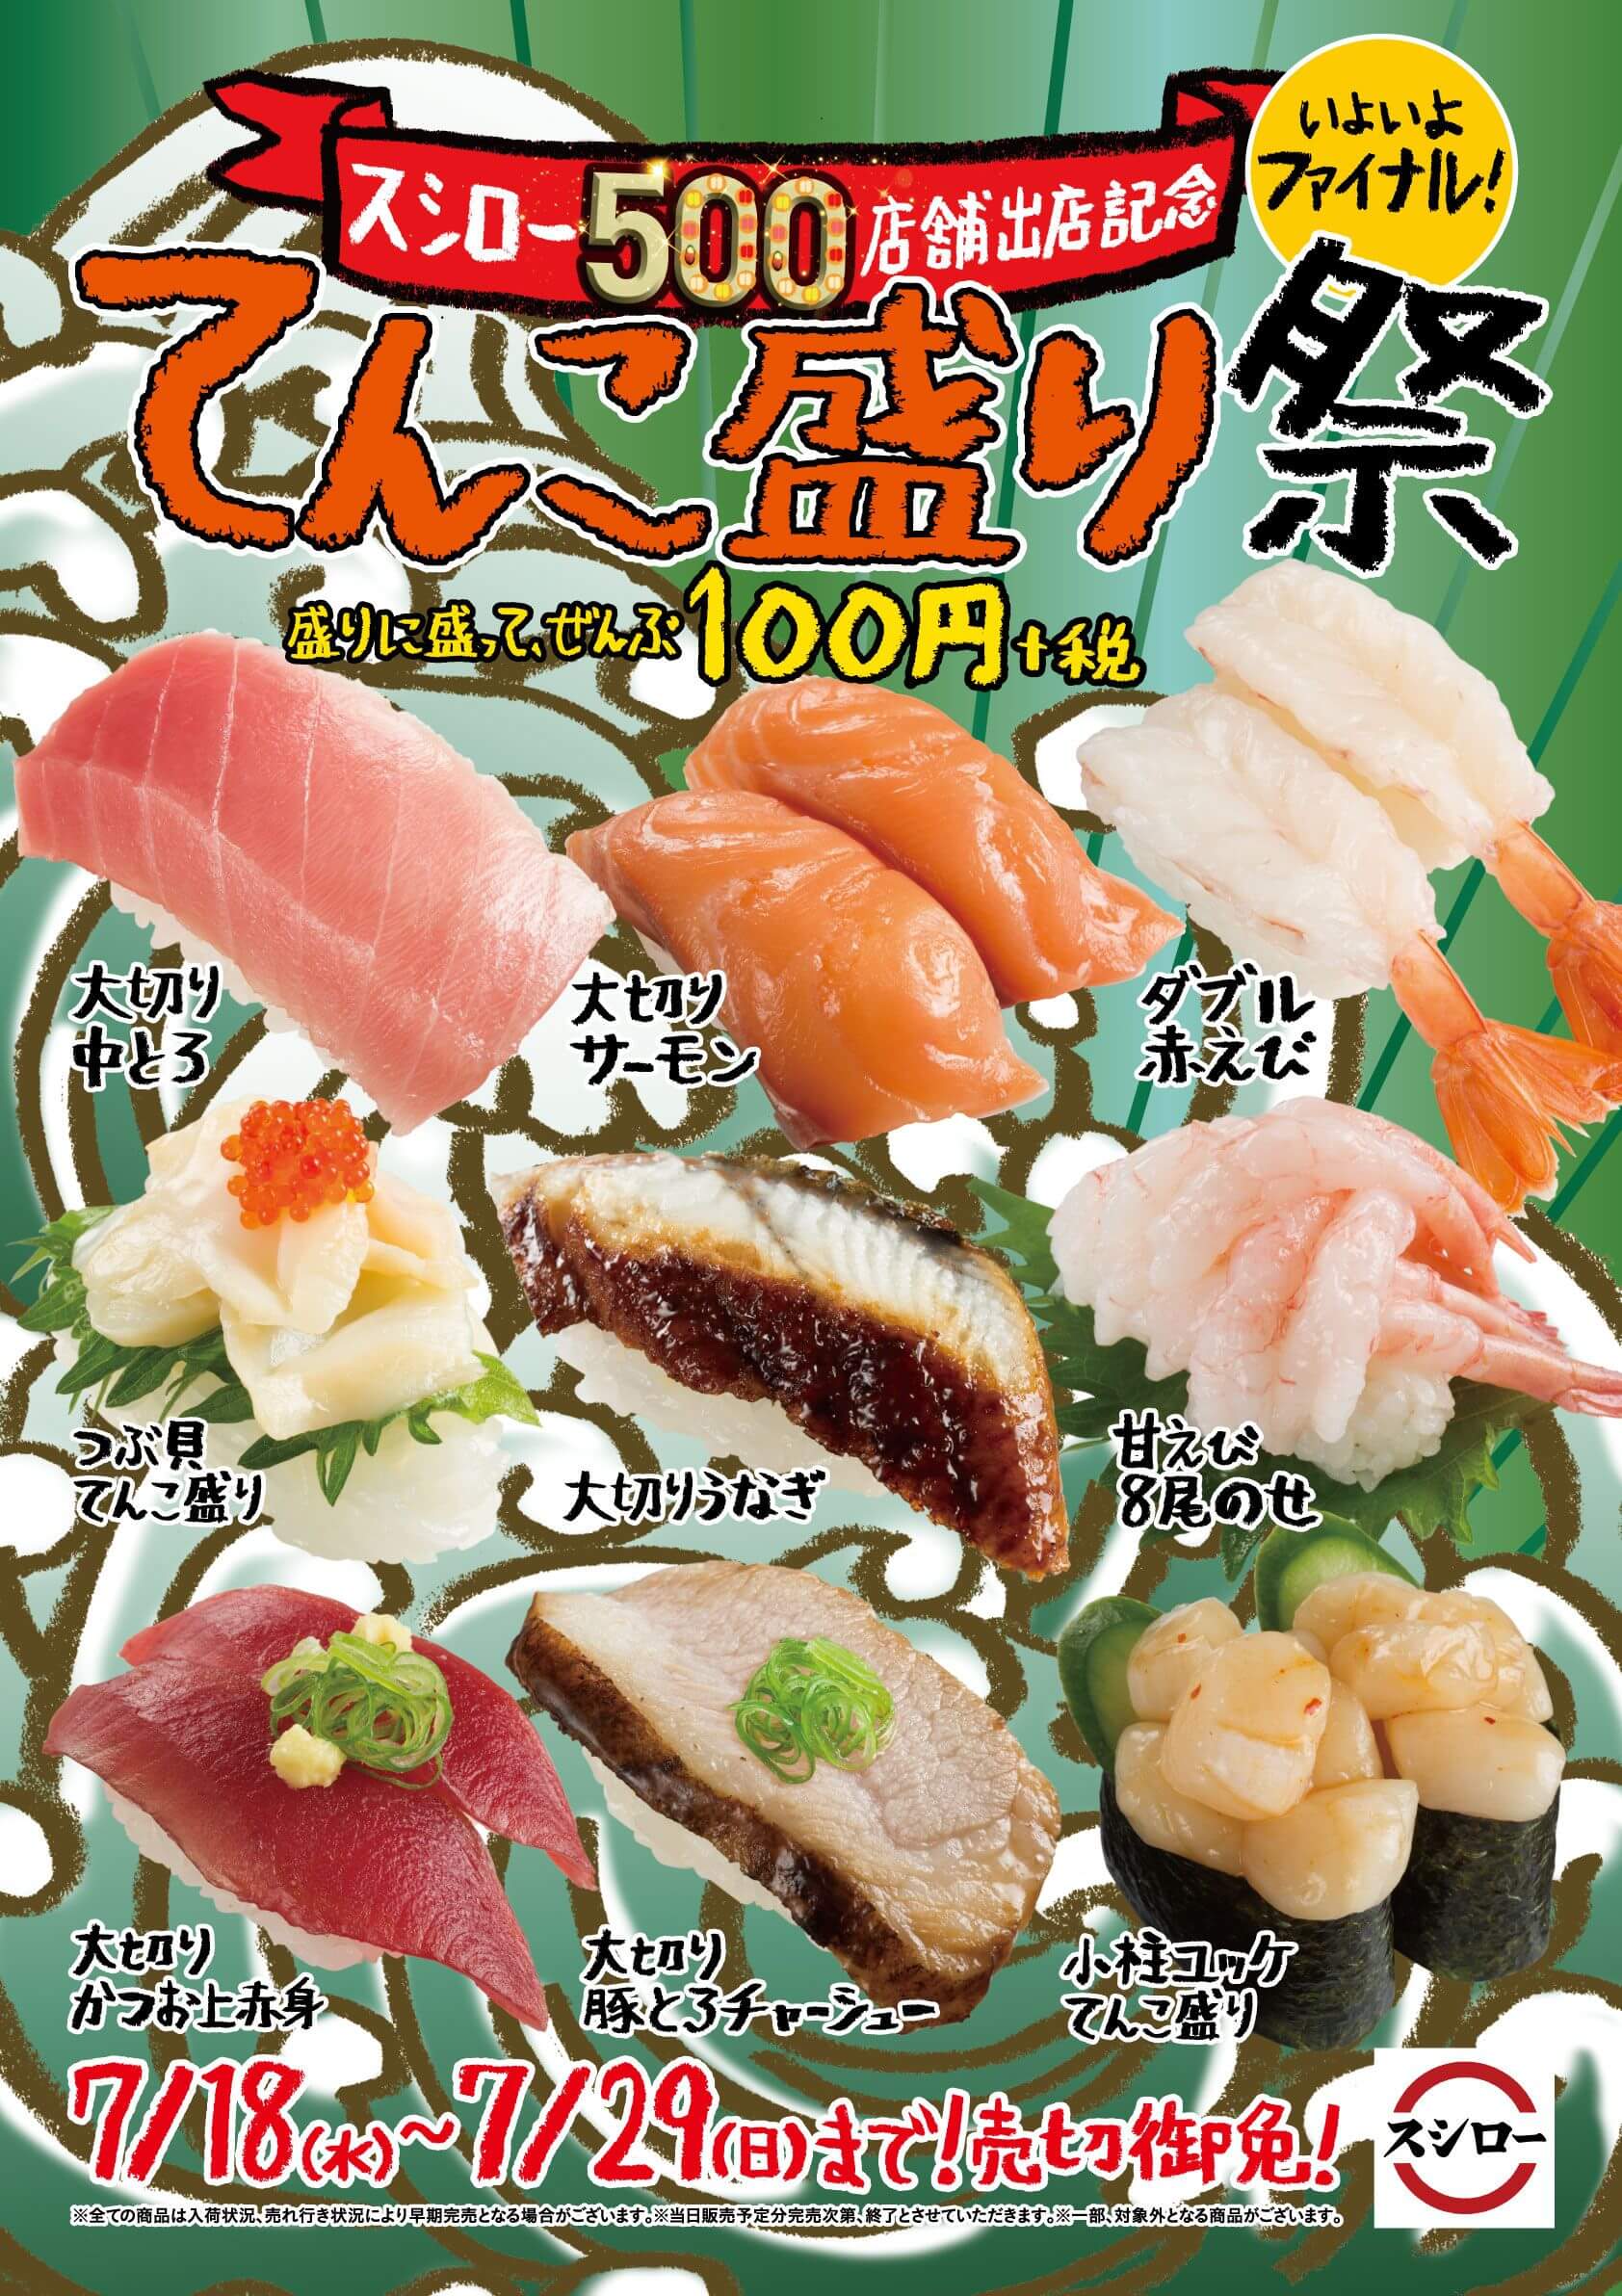 Sushi Chain Sushiro